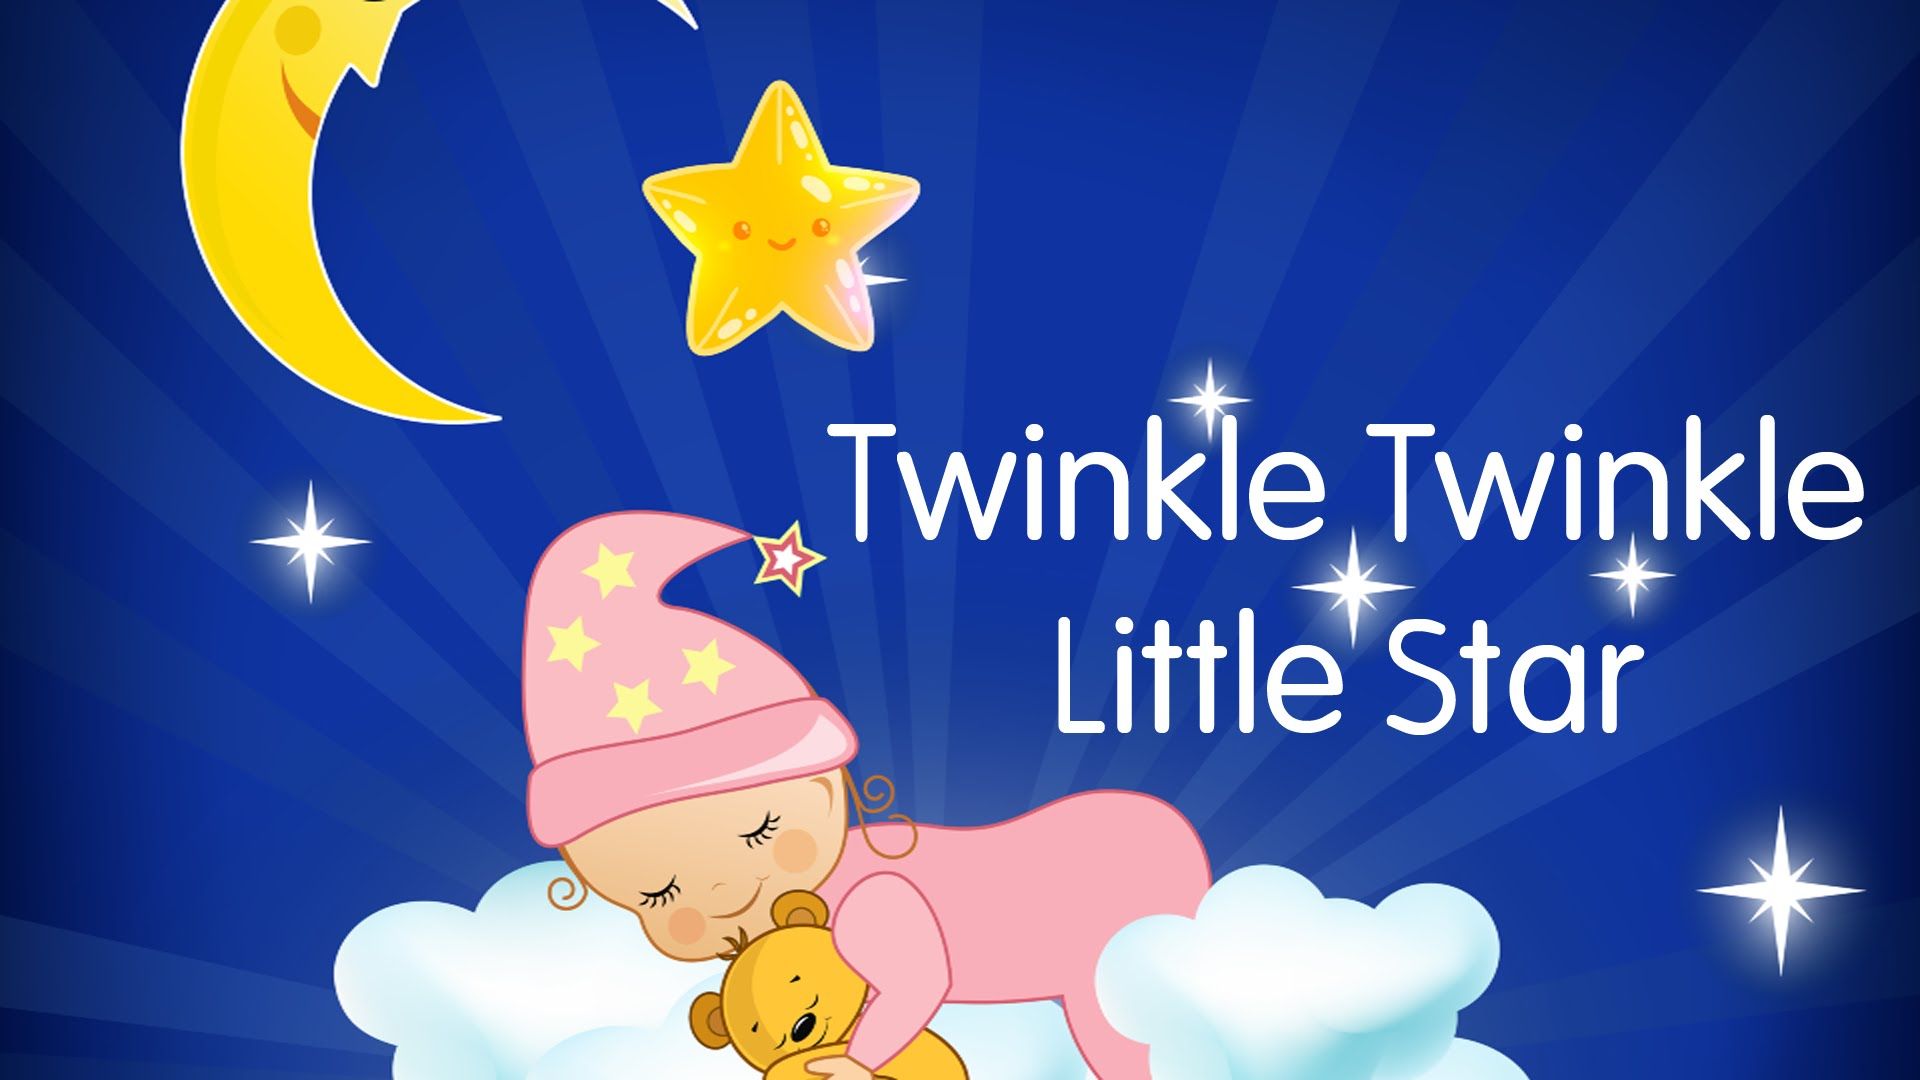 twinkle twinkle little star song